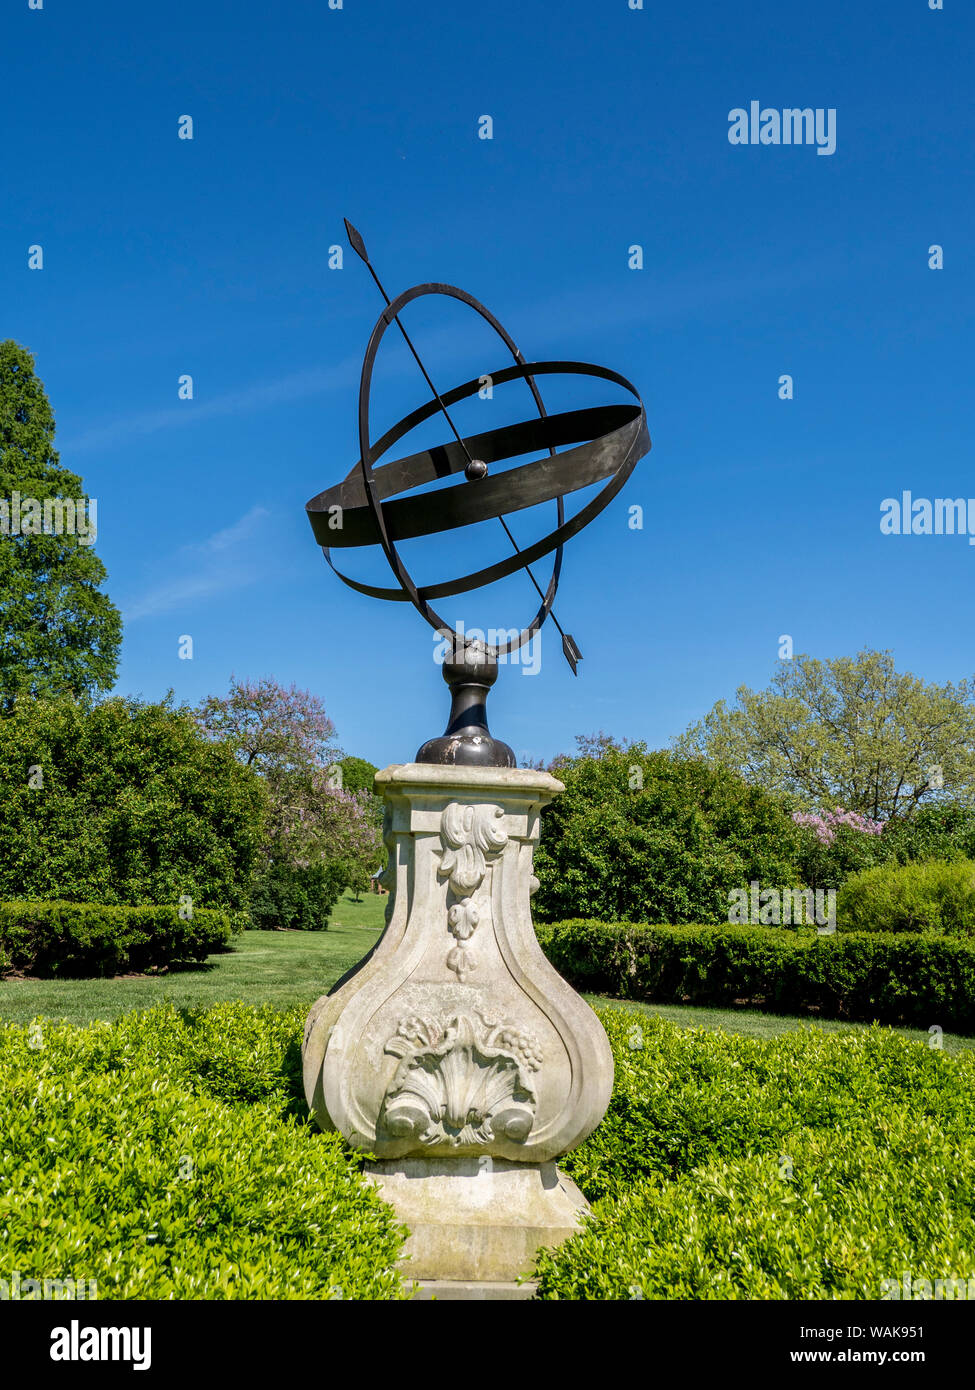 USA, Delaware. A large sun dial in a garden. Stock Photo